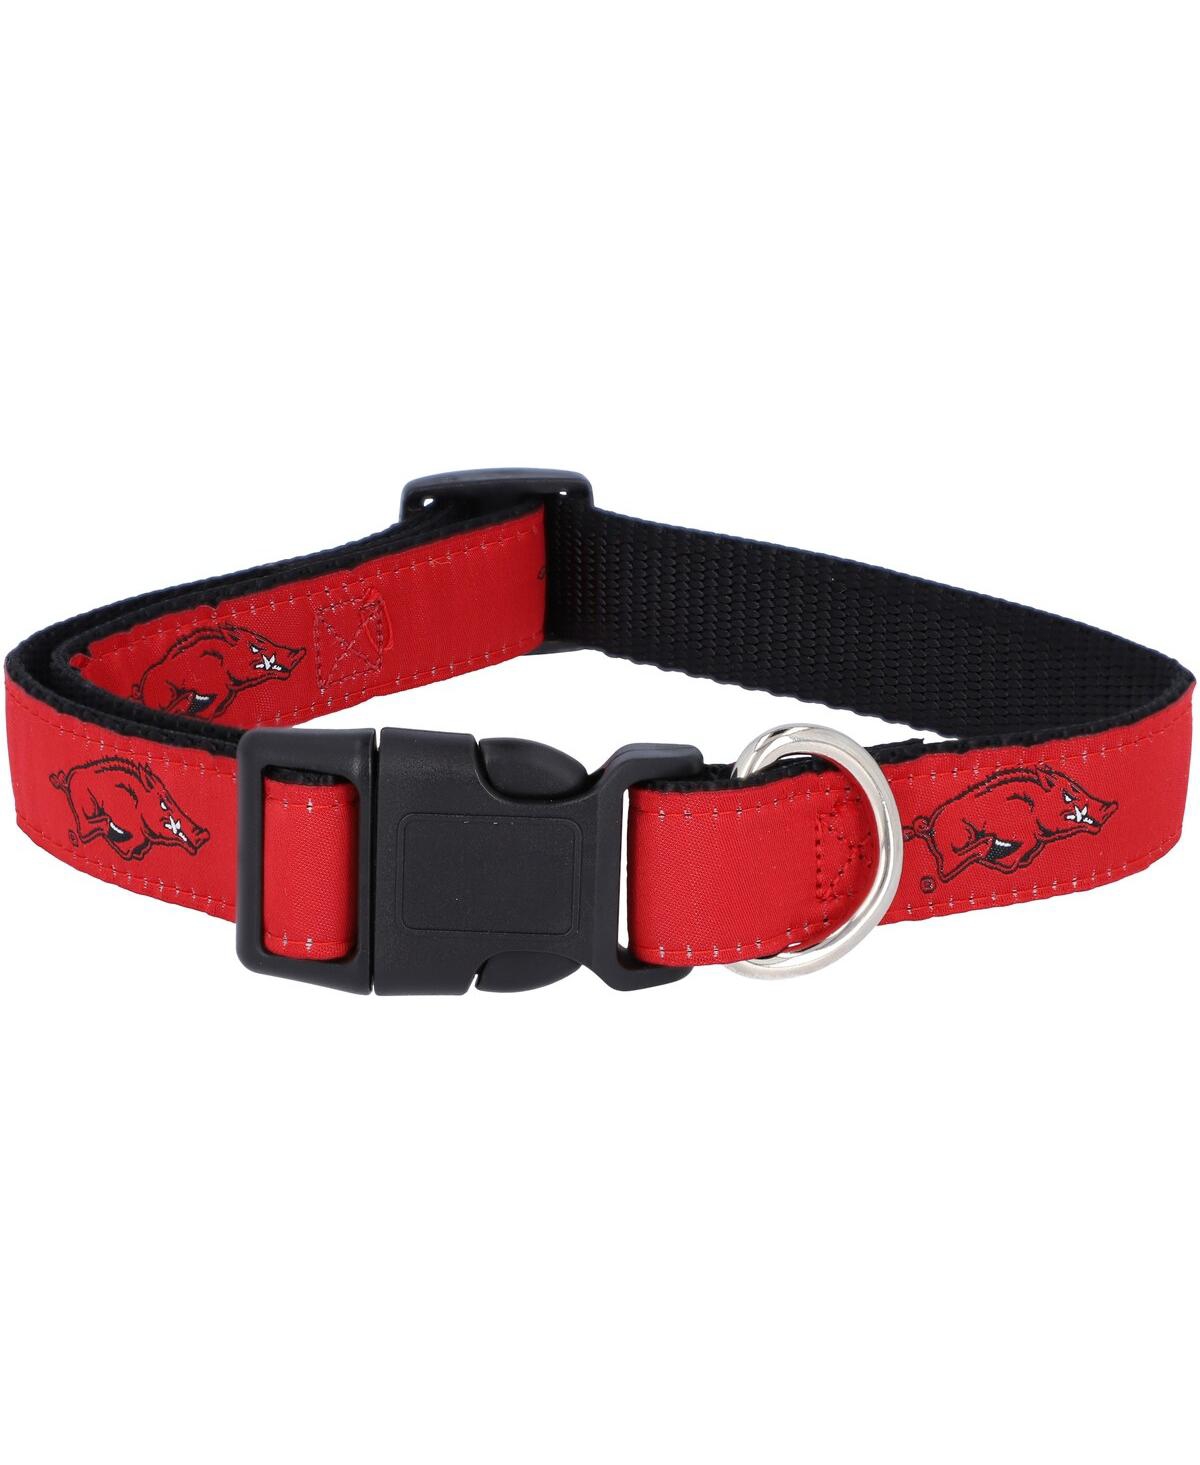 Arkansas Razorbacks 1" Regular Dog Collar - Red